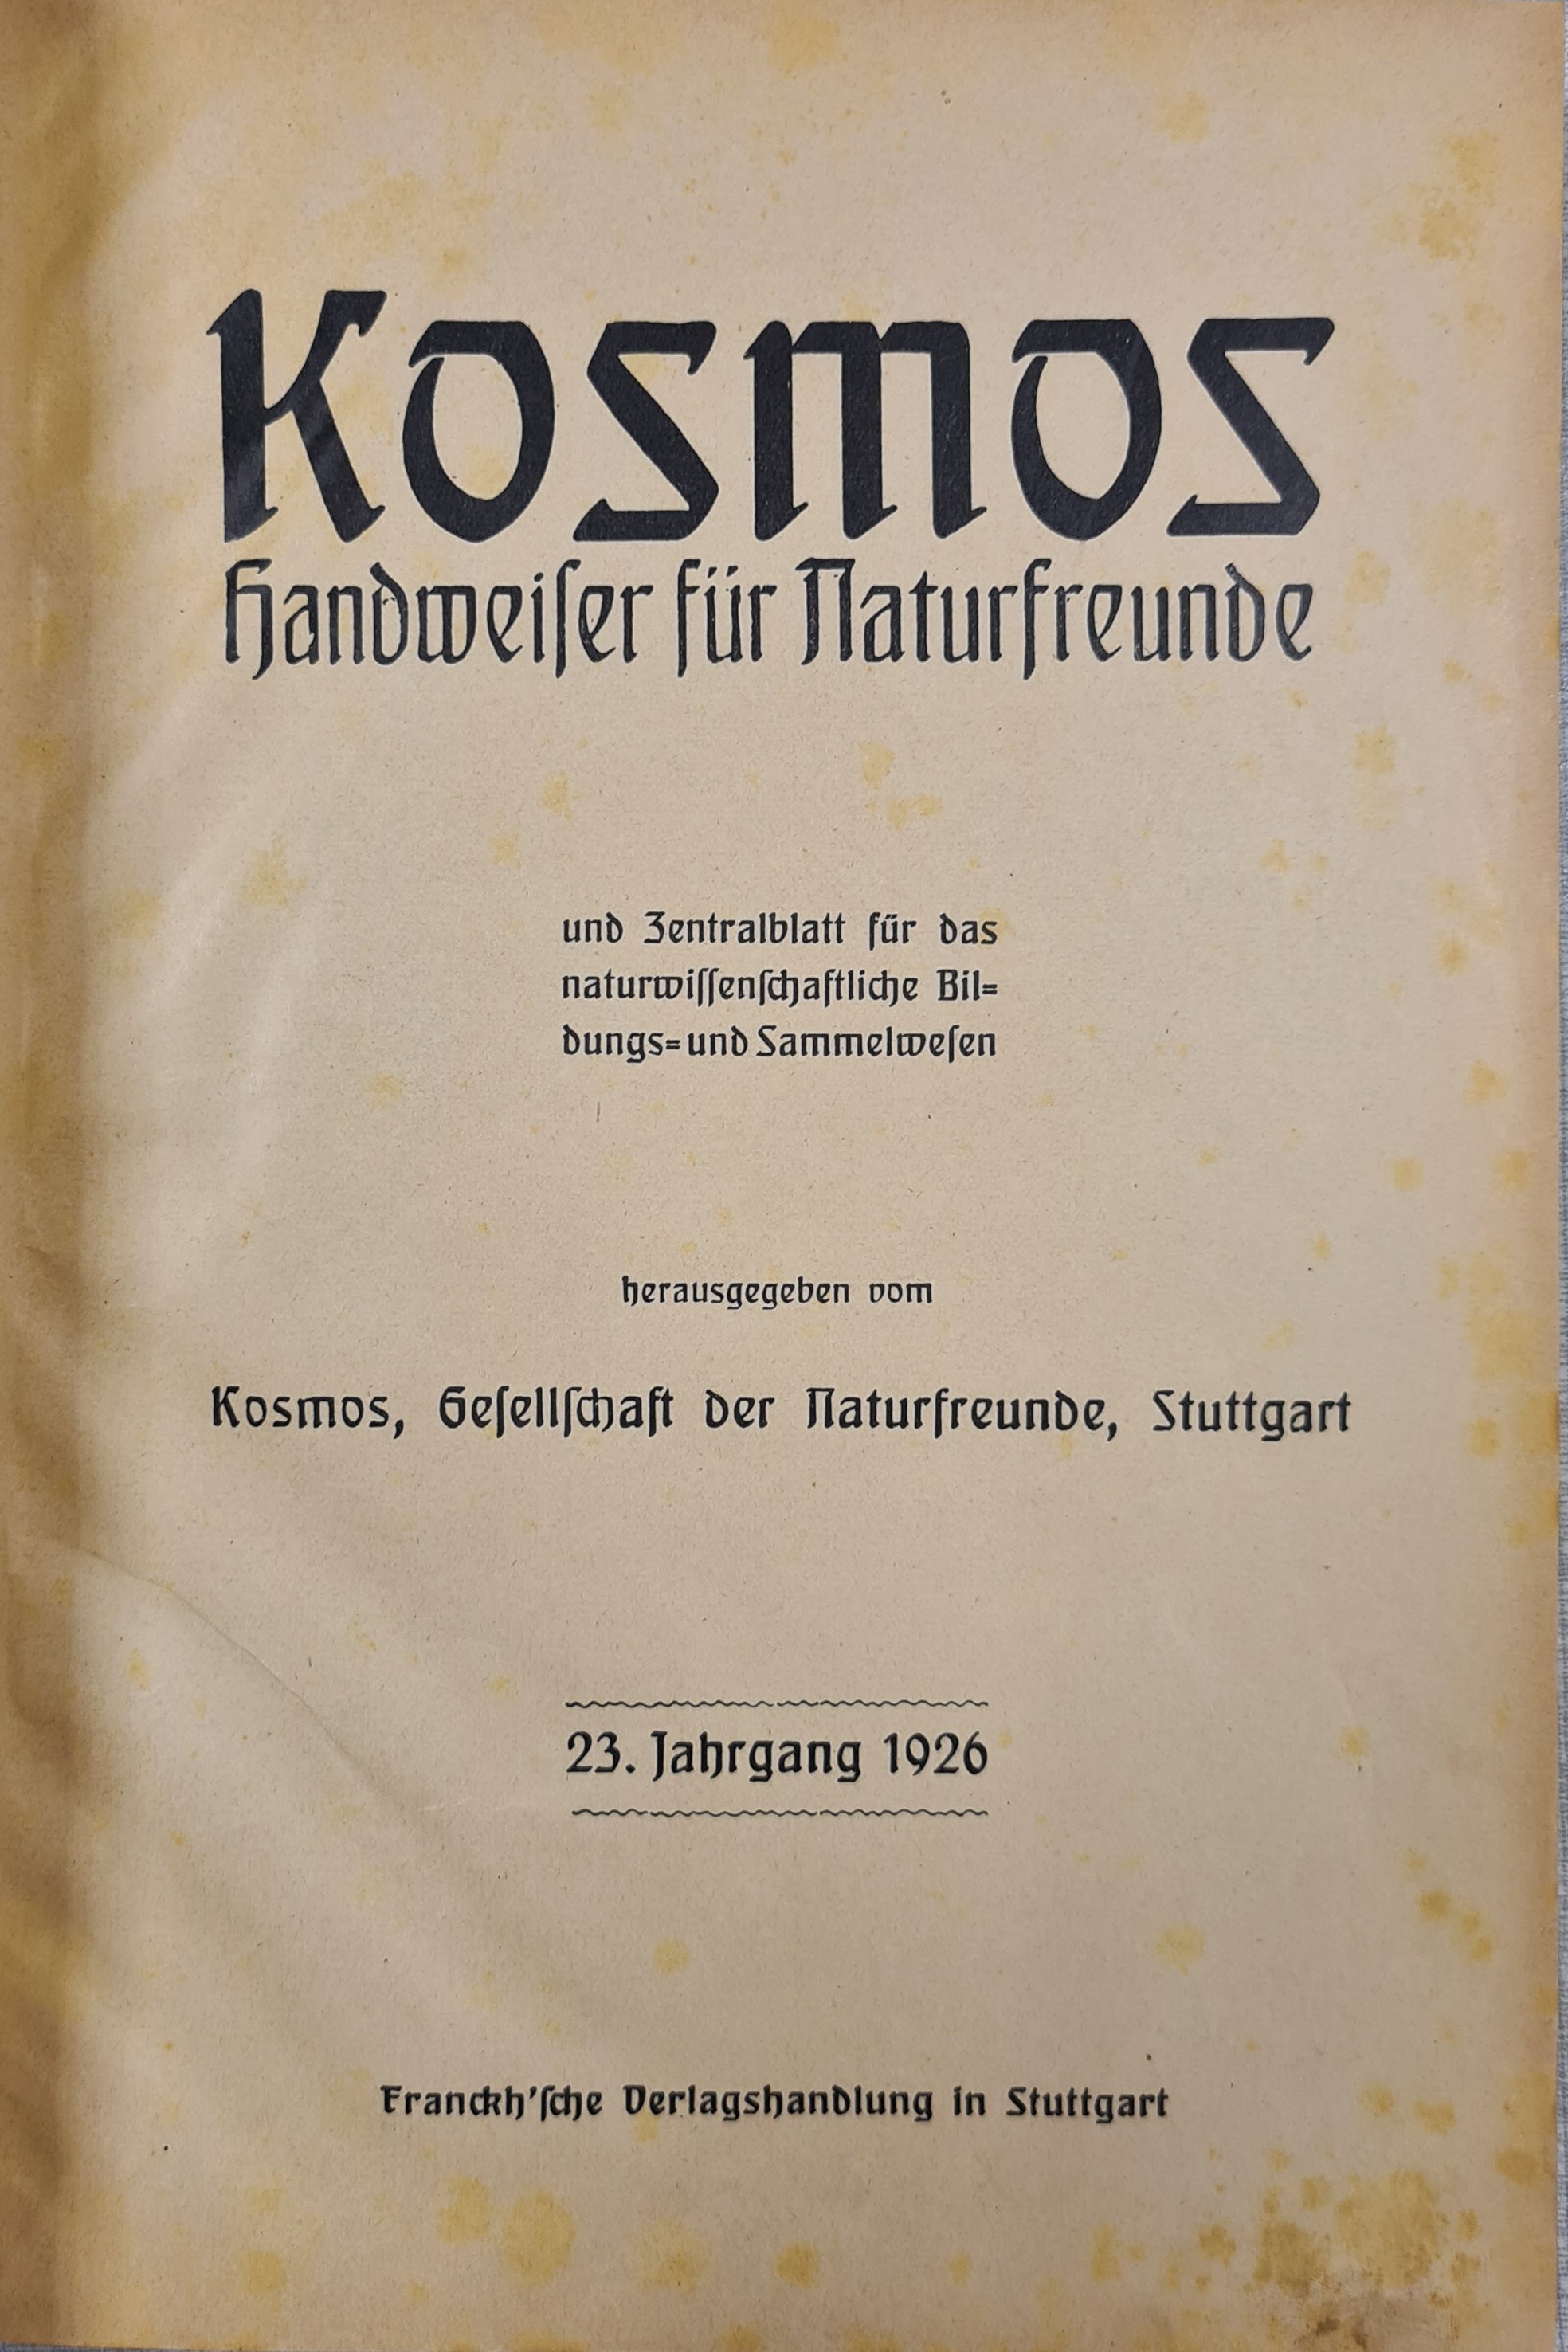 Kosmos Handweiser für Naturfreunde (Krankenhausmuseum Bielefeld e.V. CC BY-NC-SA)